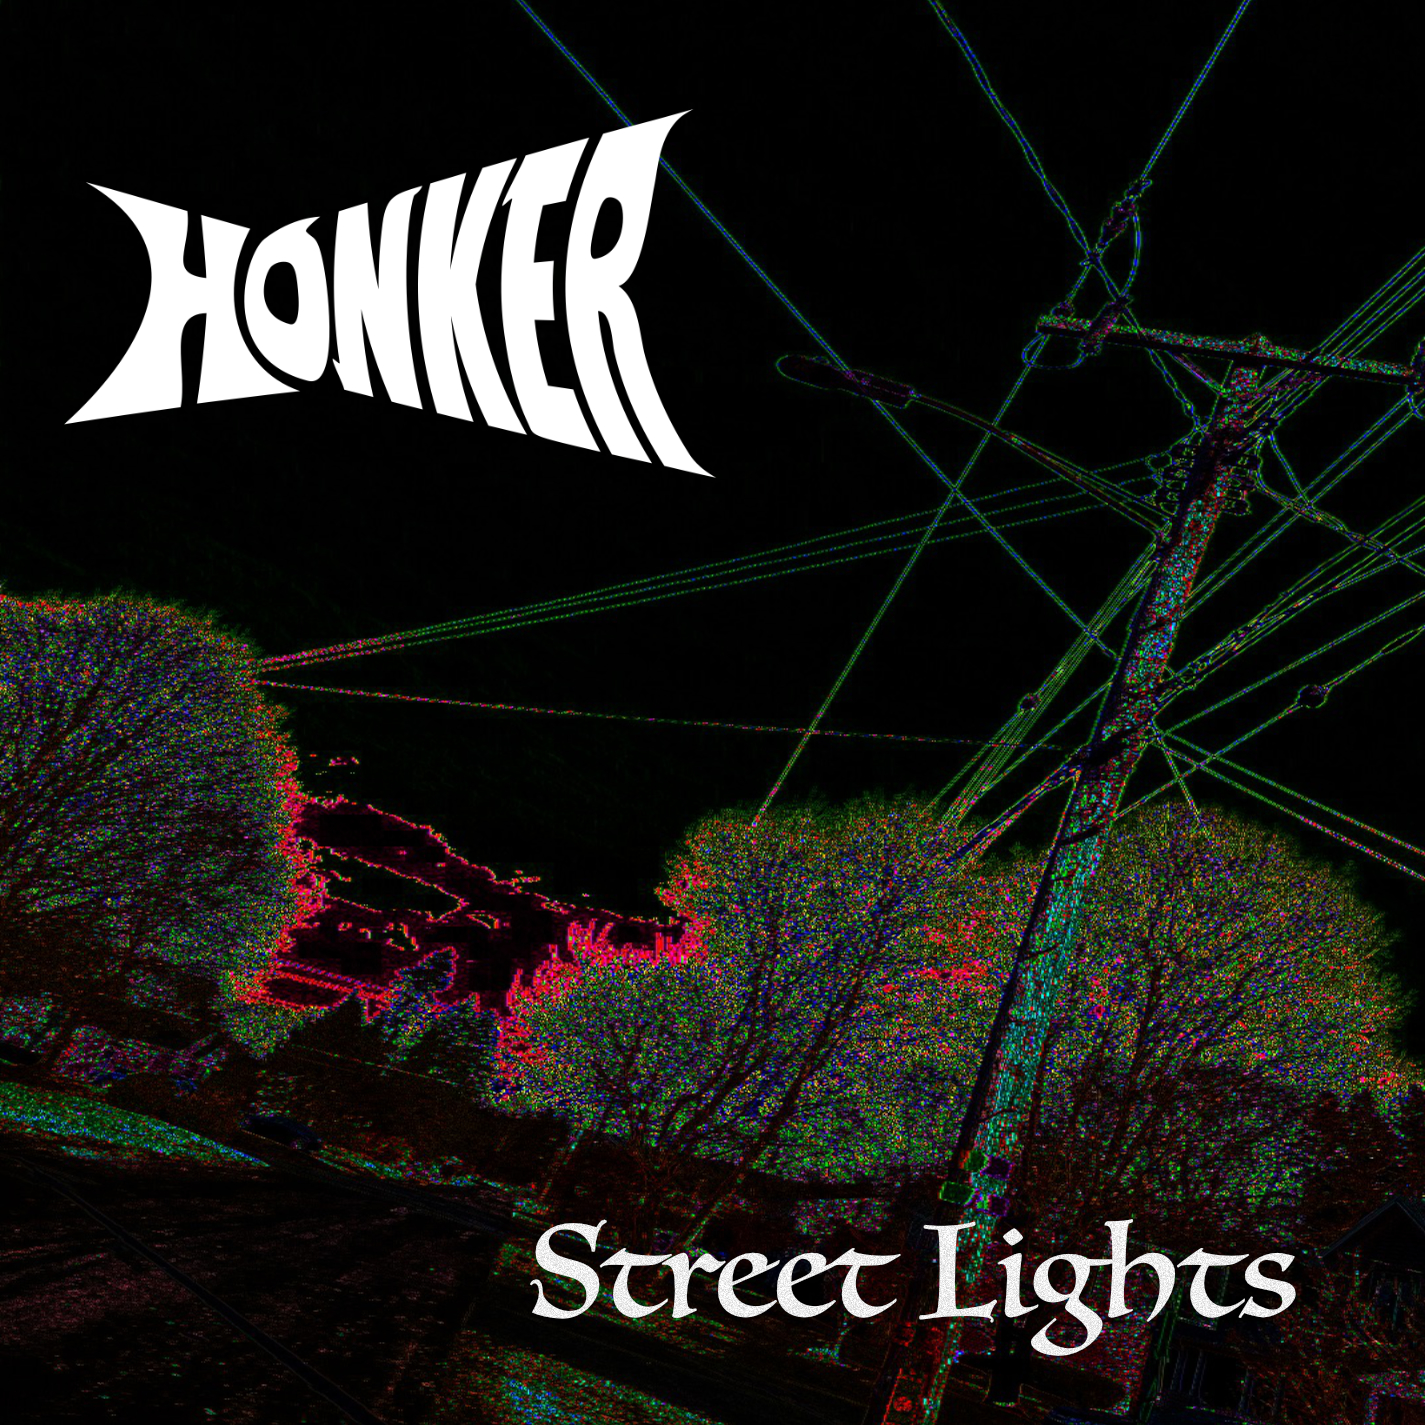 Honker - Street Lights cover